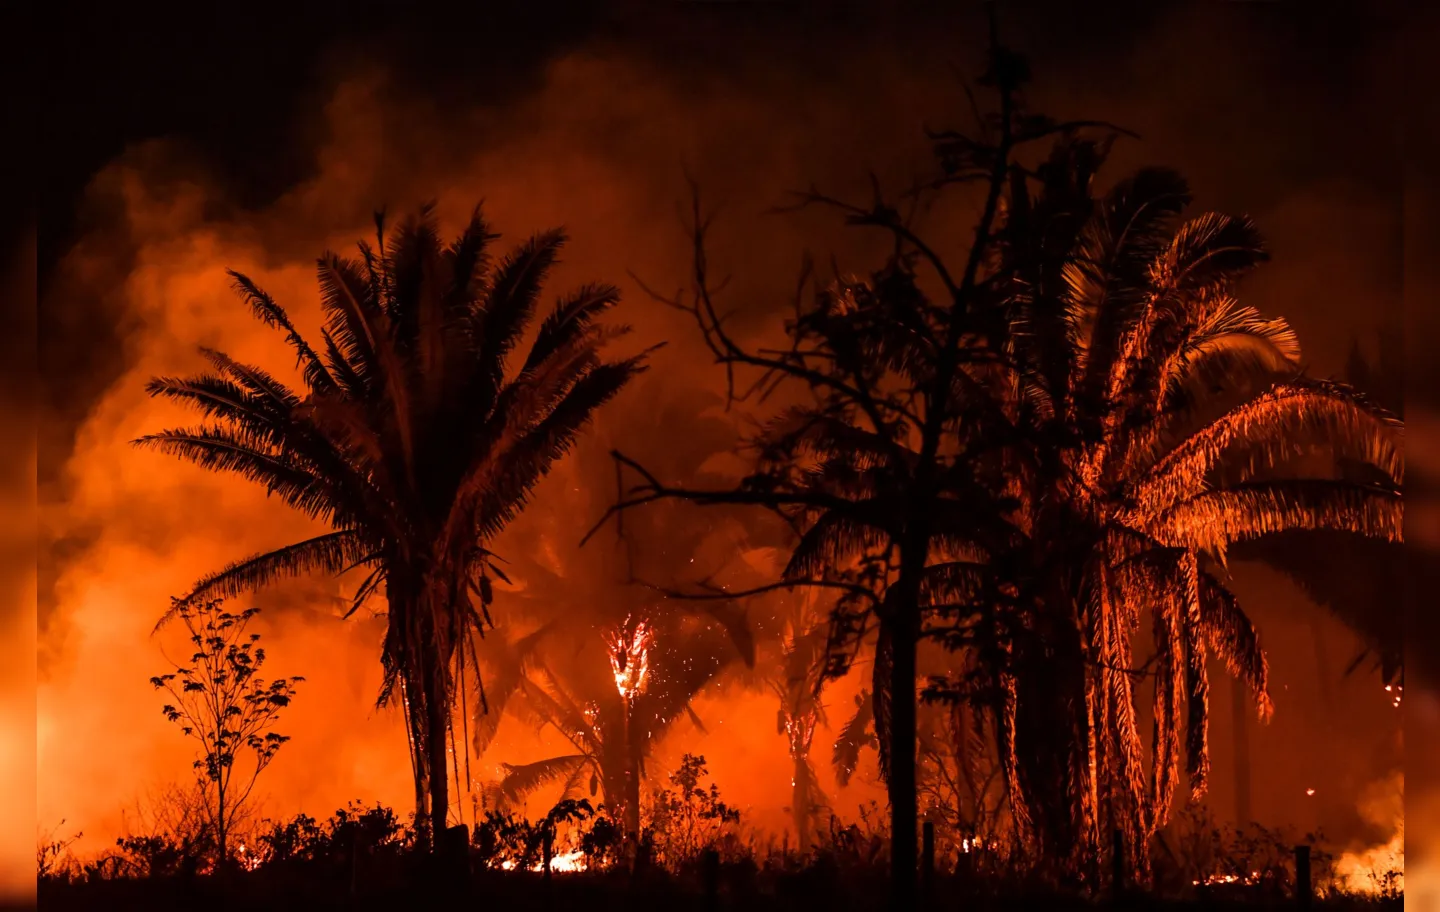 Floresta amazônica sofre incêndios cada vez mais frequentes, de acordo com o estudo | Foto: NELSON ALMEIDA | AFP